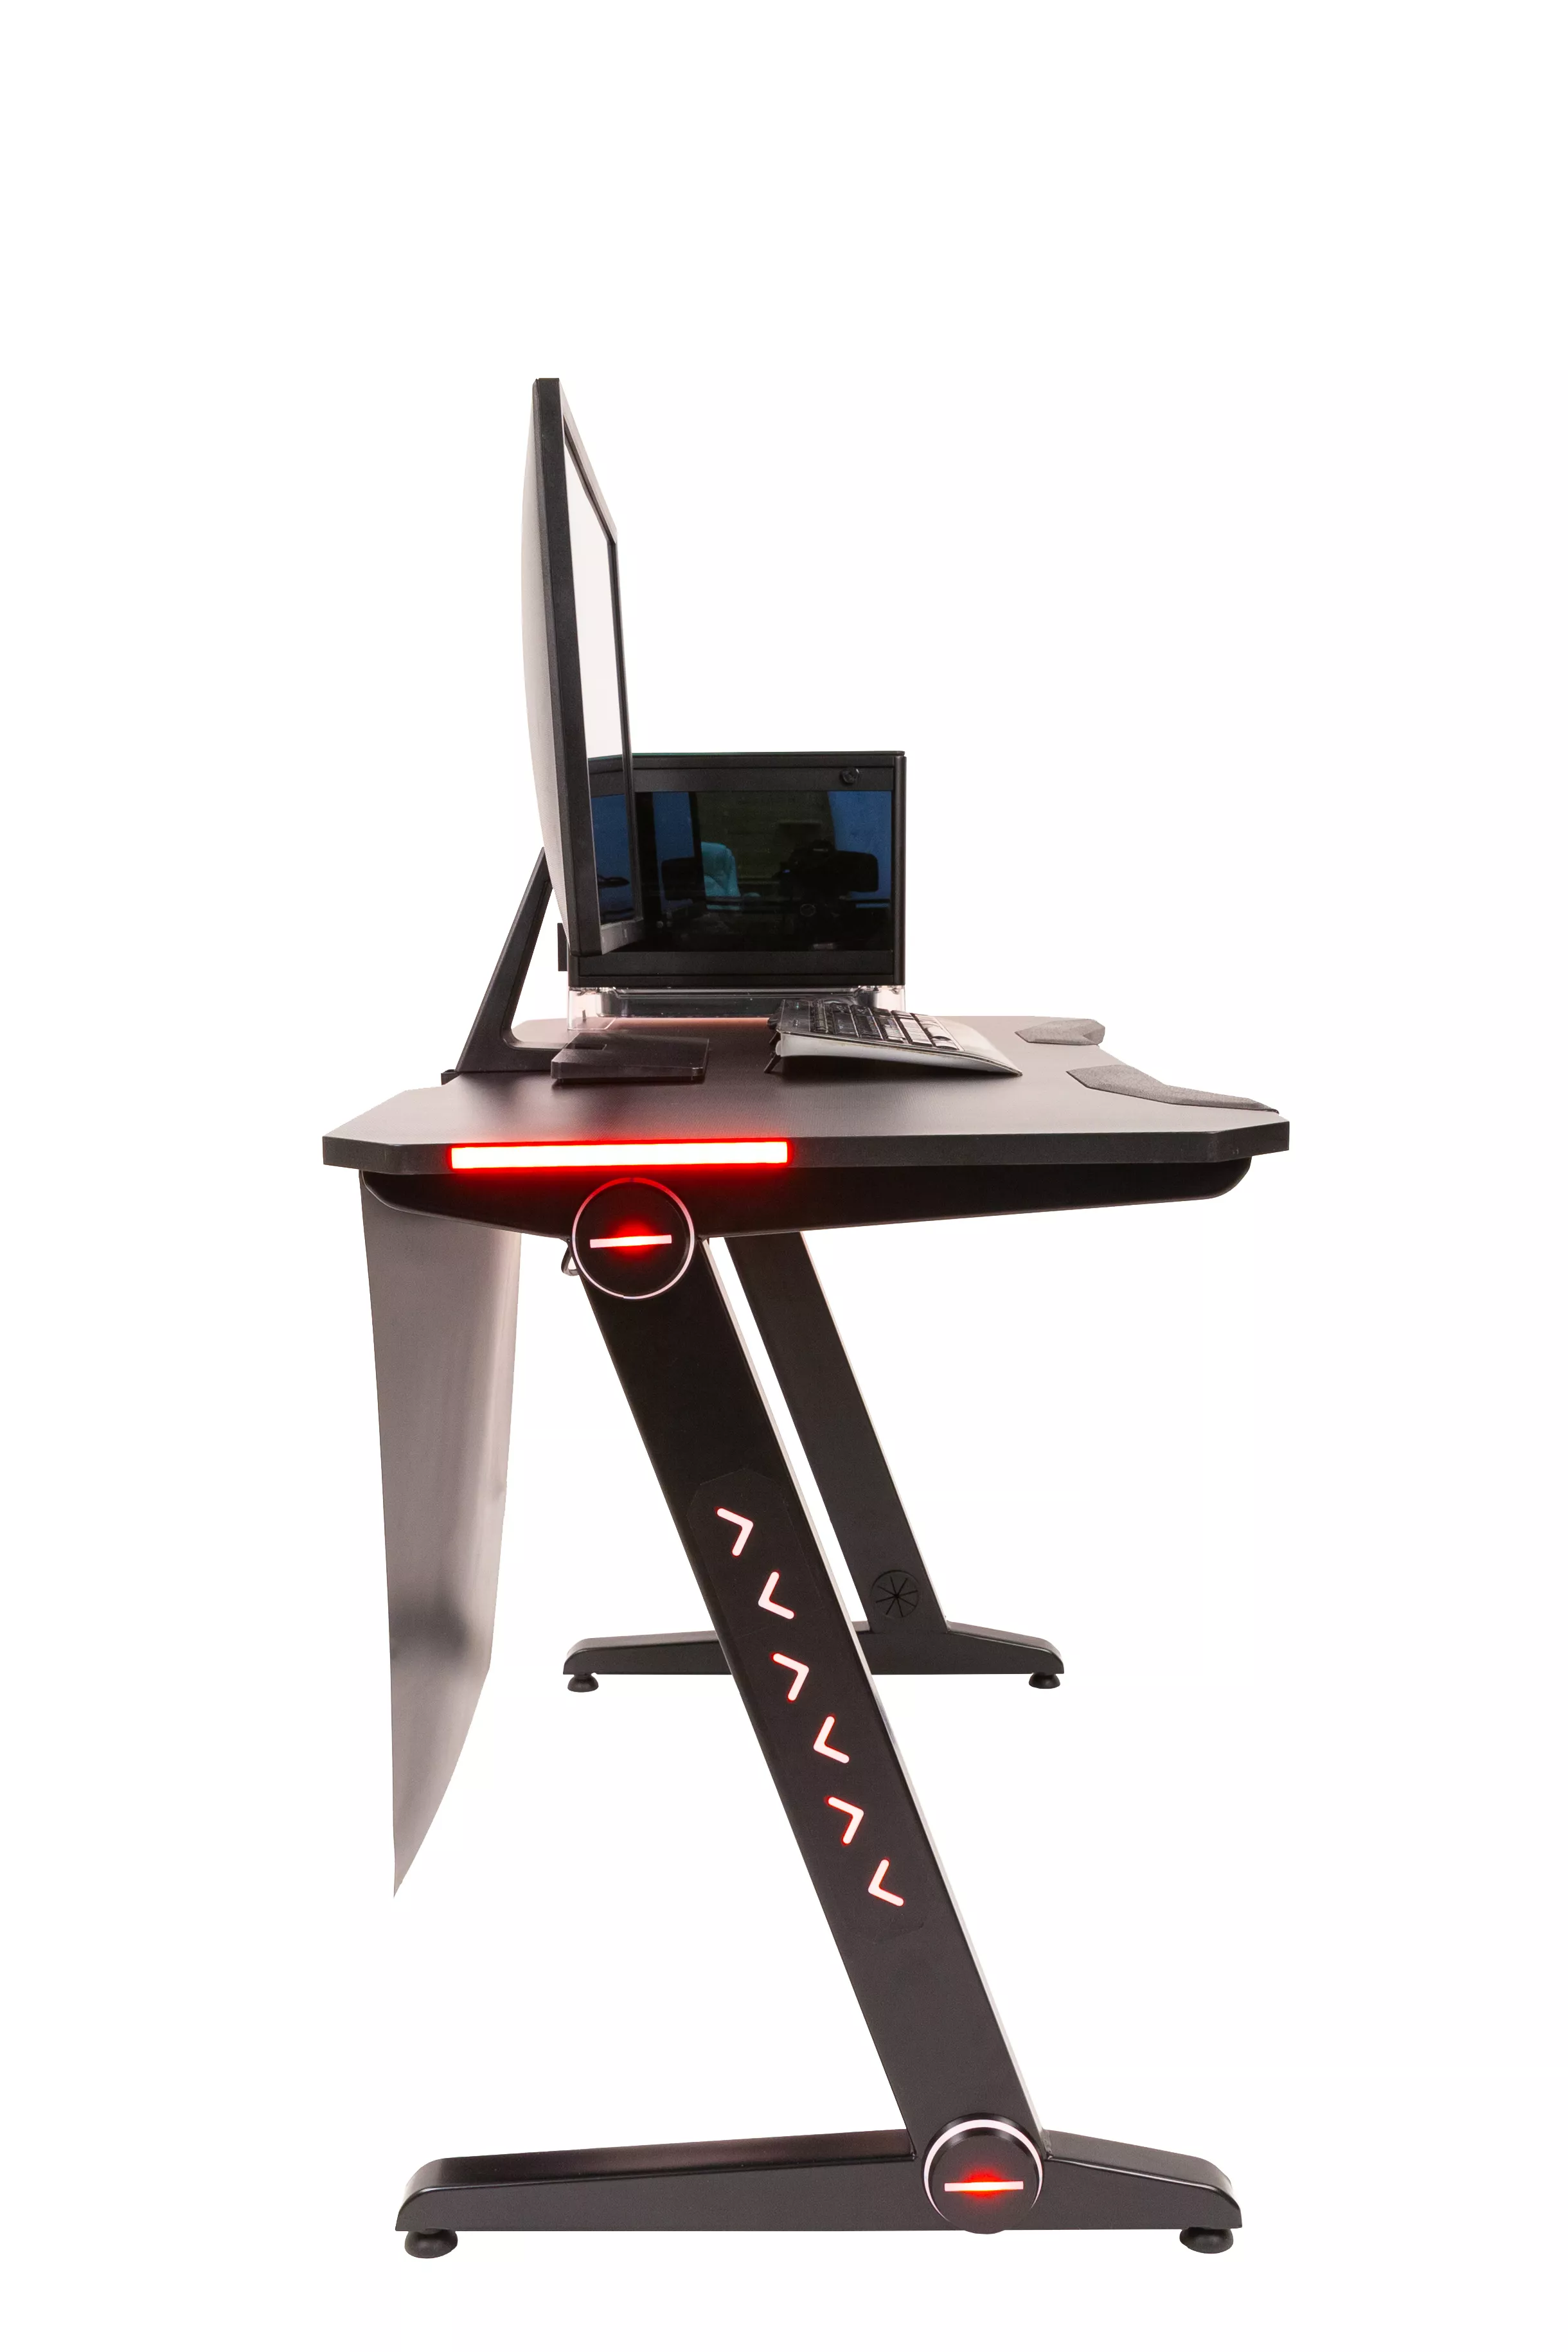 Компьютерный стол с подсветкой SKILLL CTG 1260